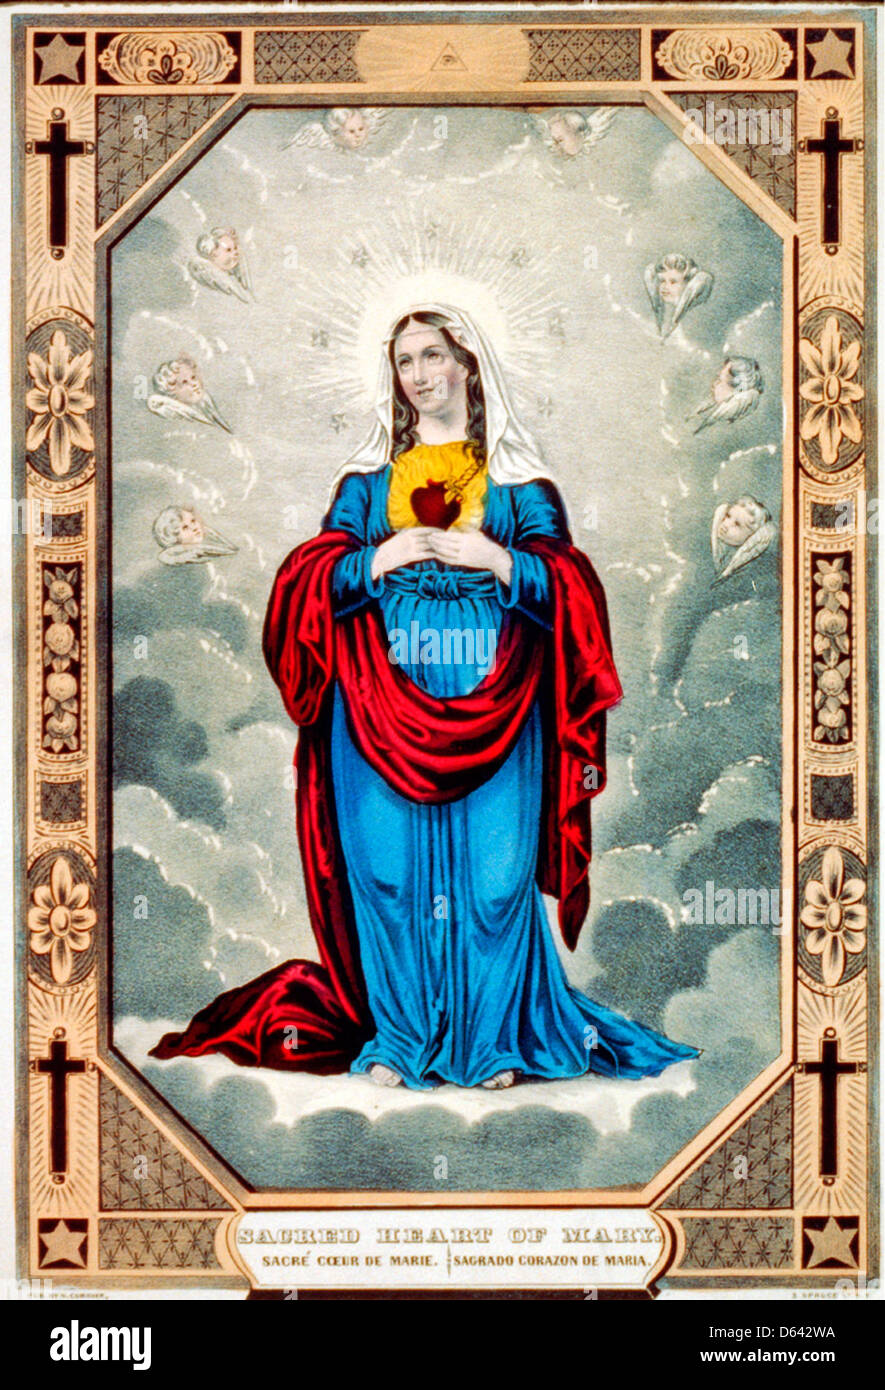 Sacro Cuore di Maria: sacre ́coeur de Marie / Sagrado Corazon de Maria, circa 1848 Foto Stock